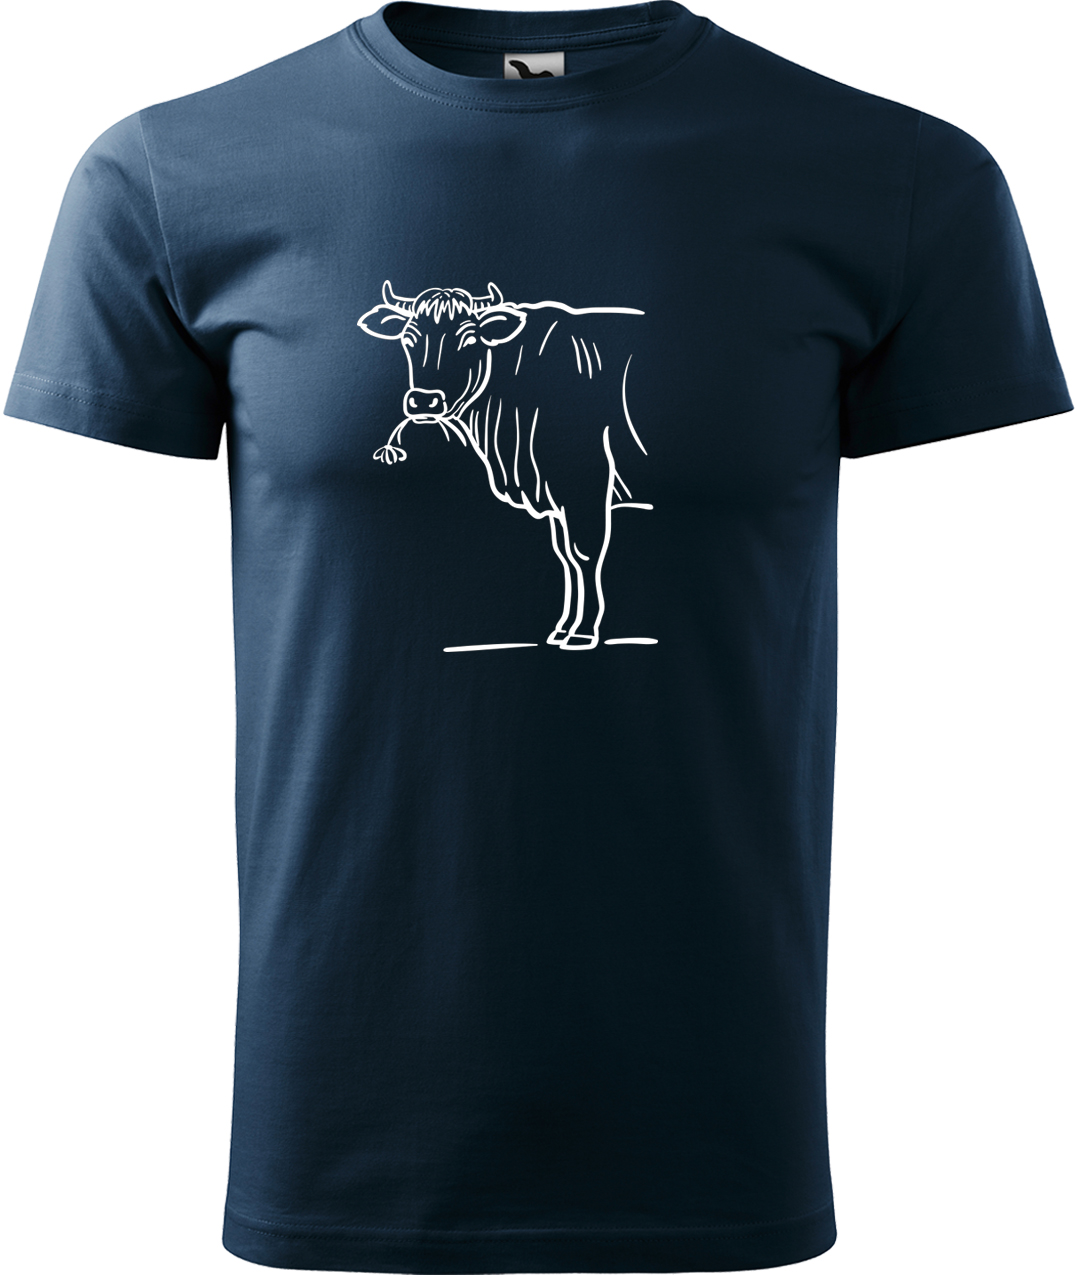 Pánské tričko s krávou - Býk Velikost: S, Barva: Námořní modrá (02), Střih: pánský